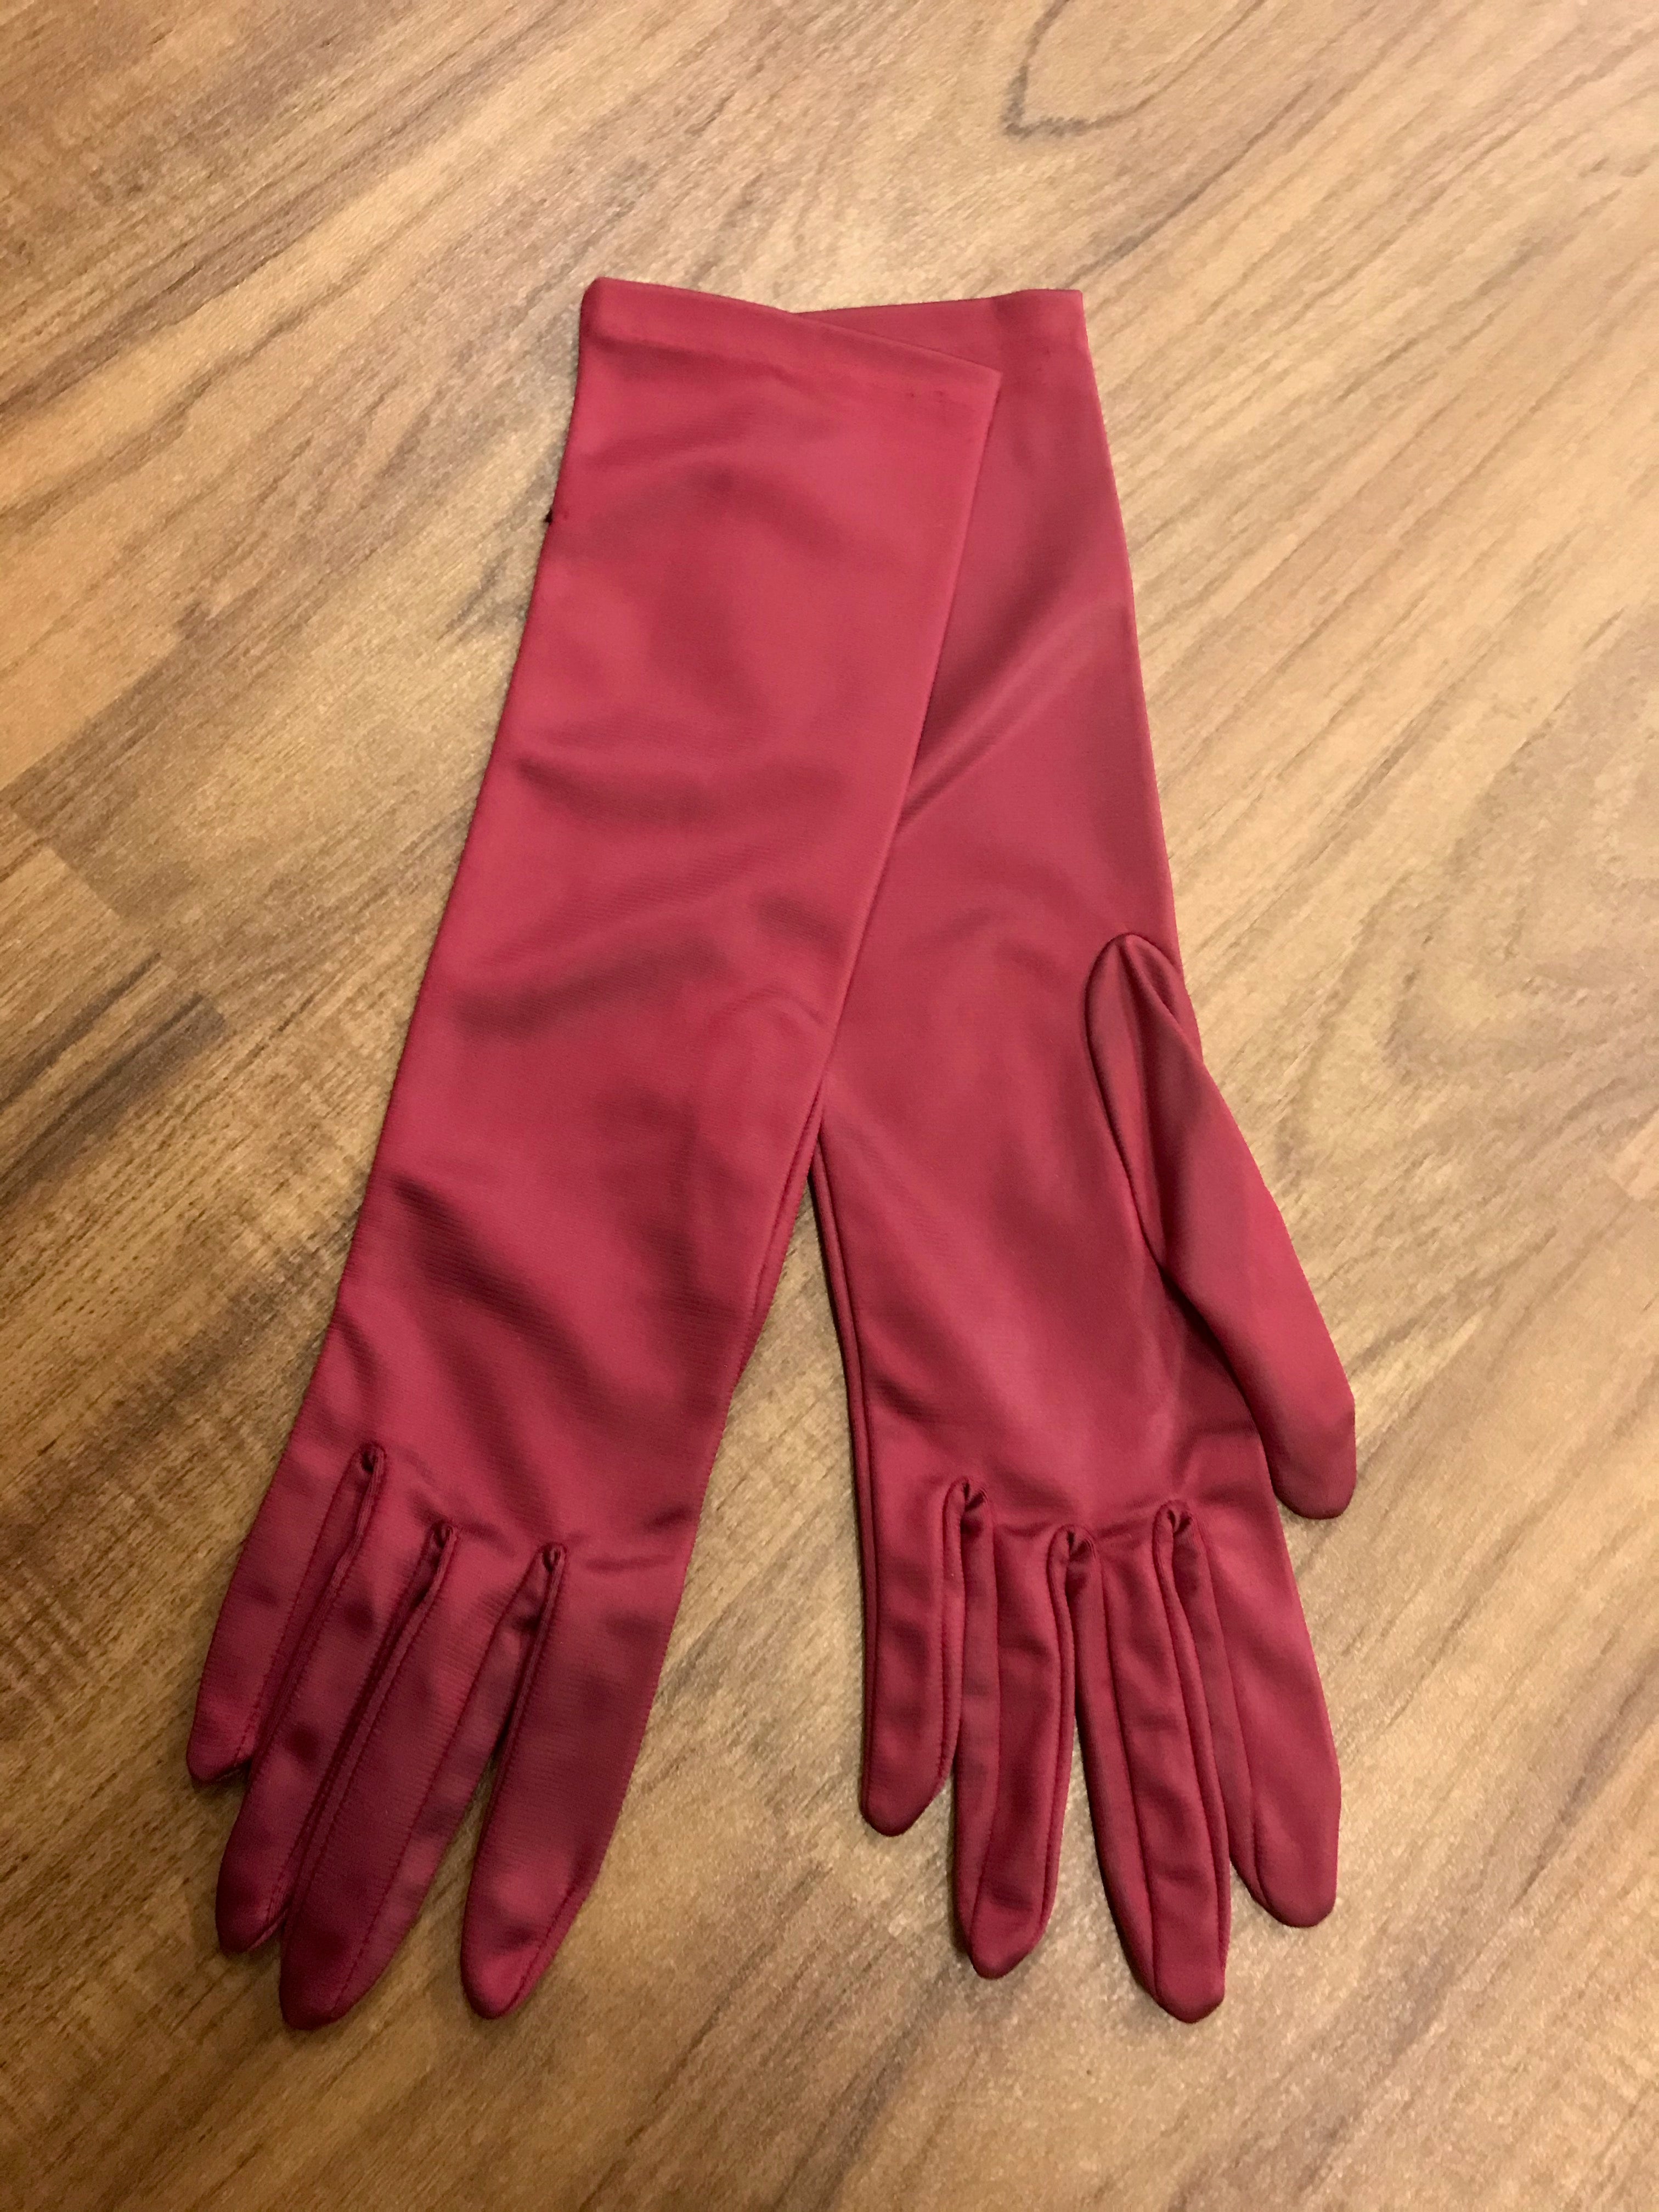 rote lange Handschuhe 20er Jahre